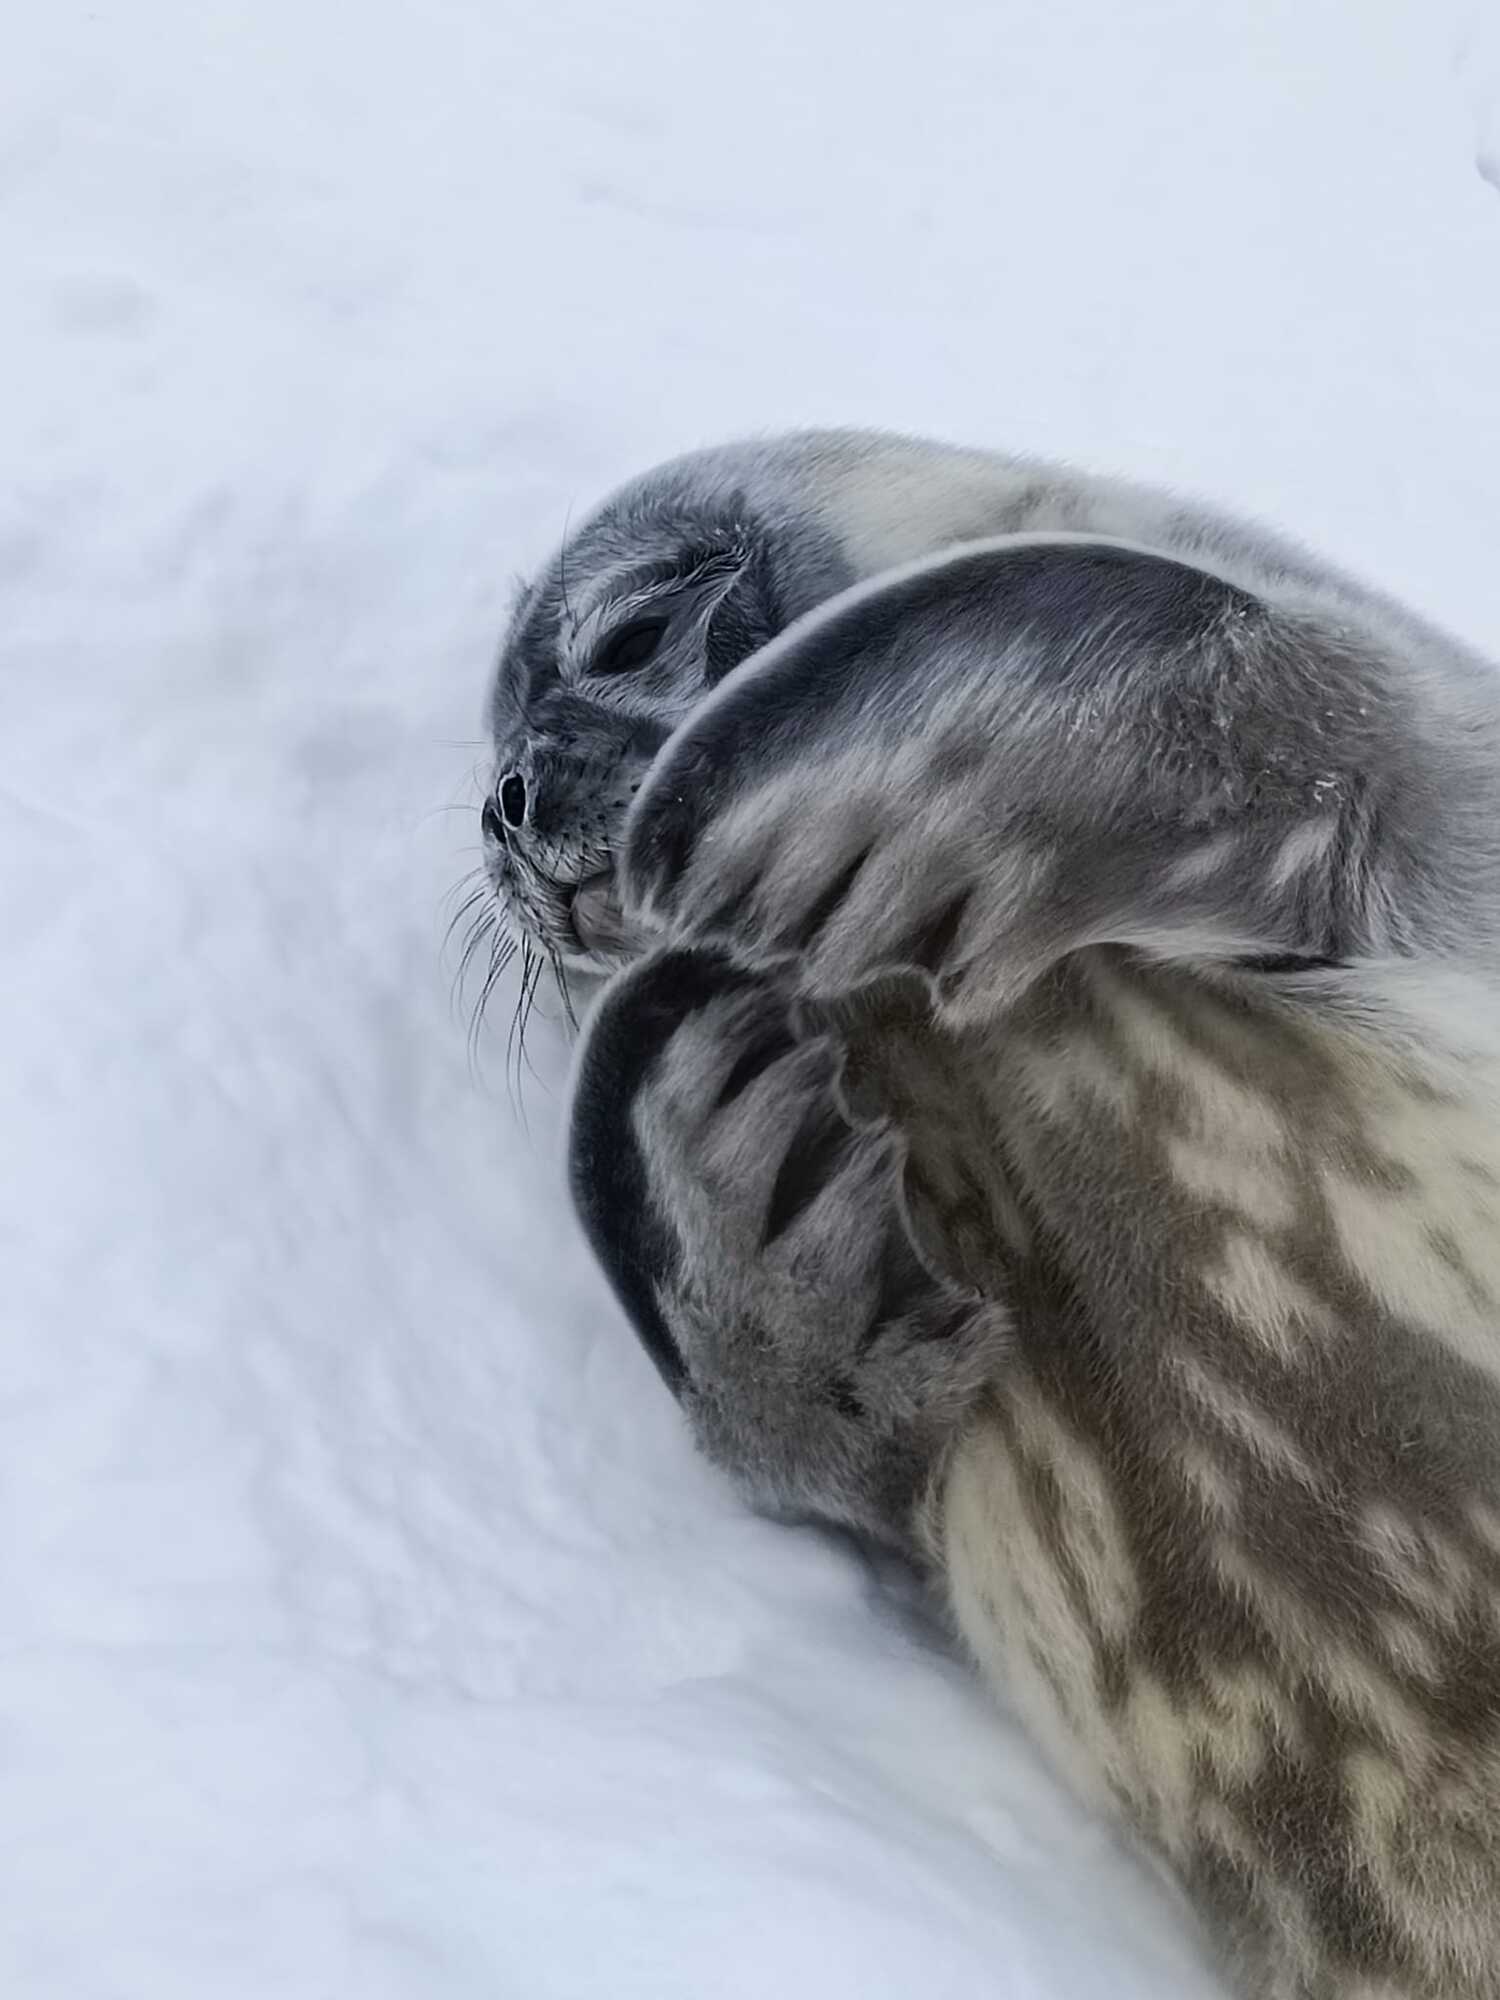 Украинские полярники показали тюленят Мирка и Мрию